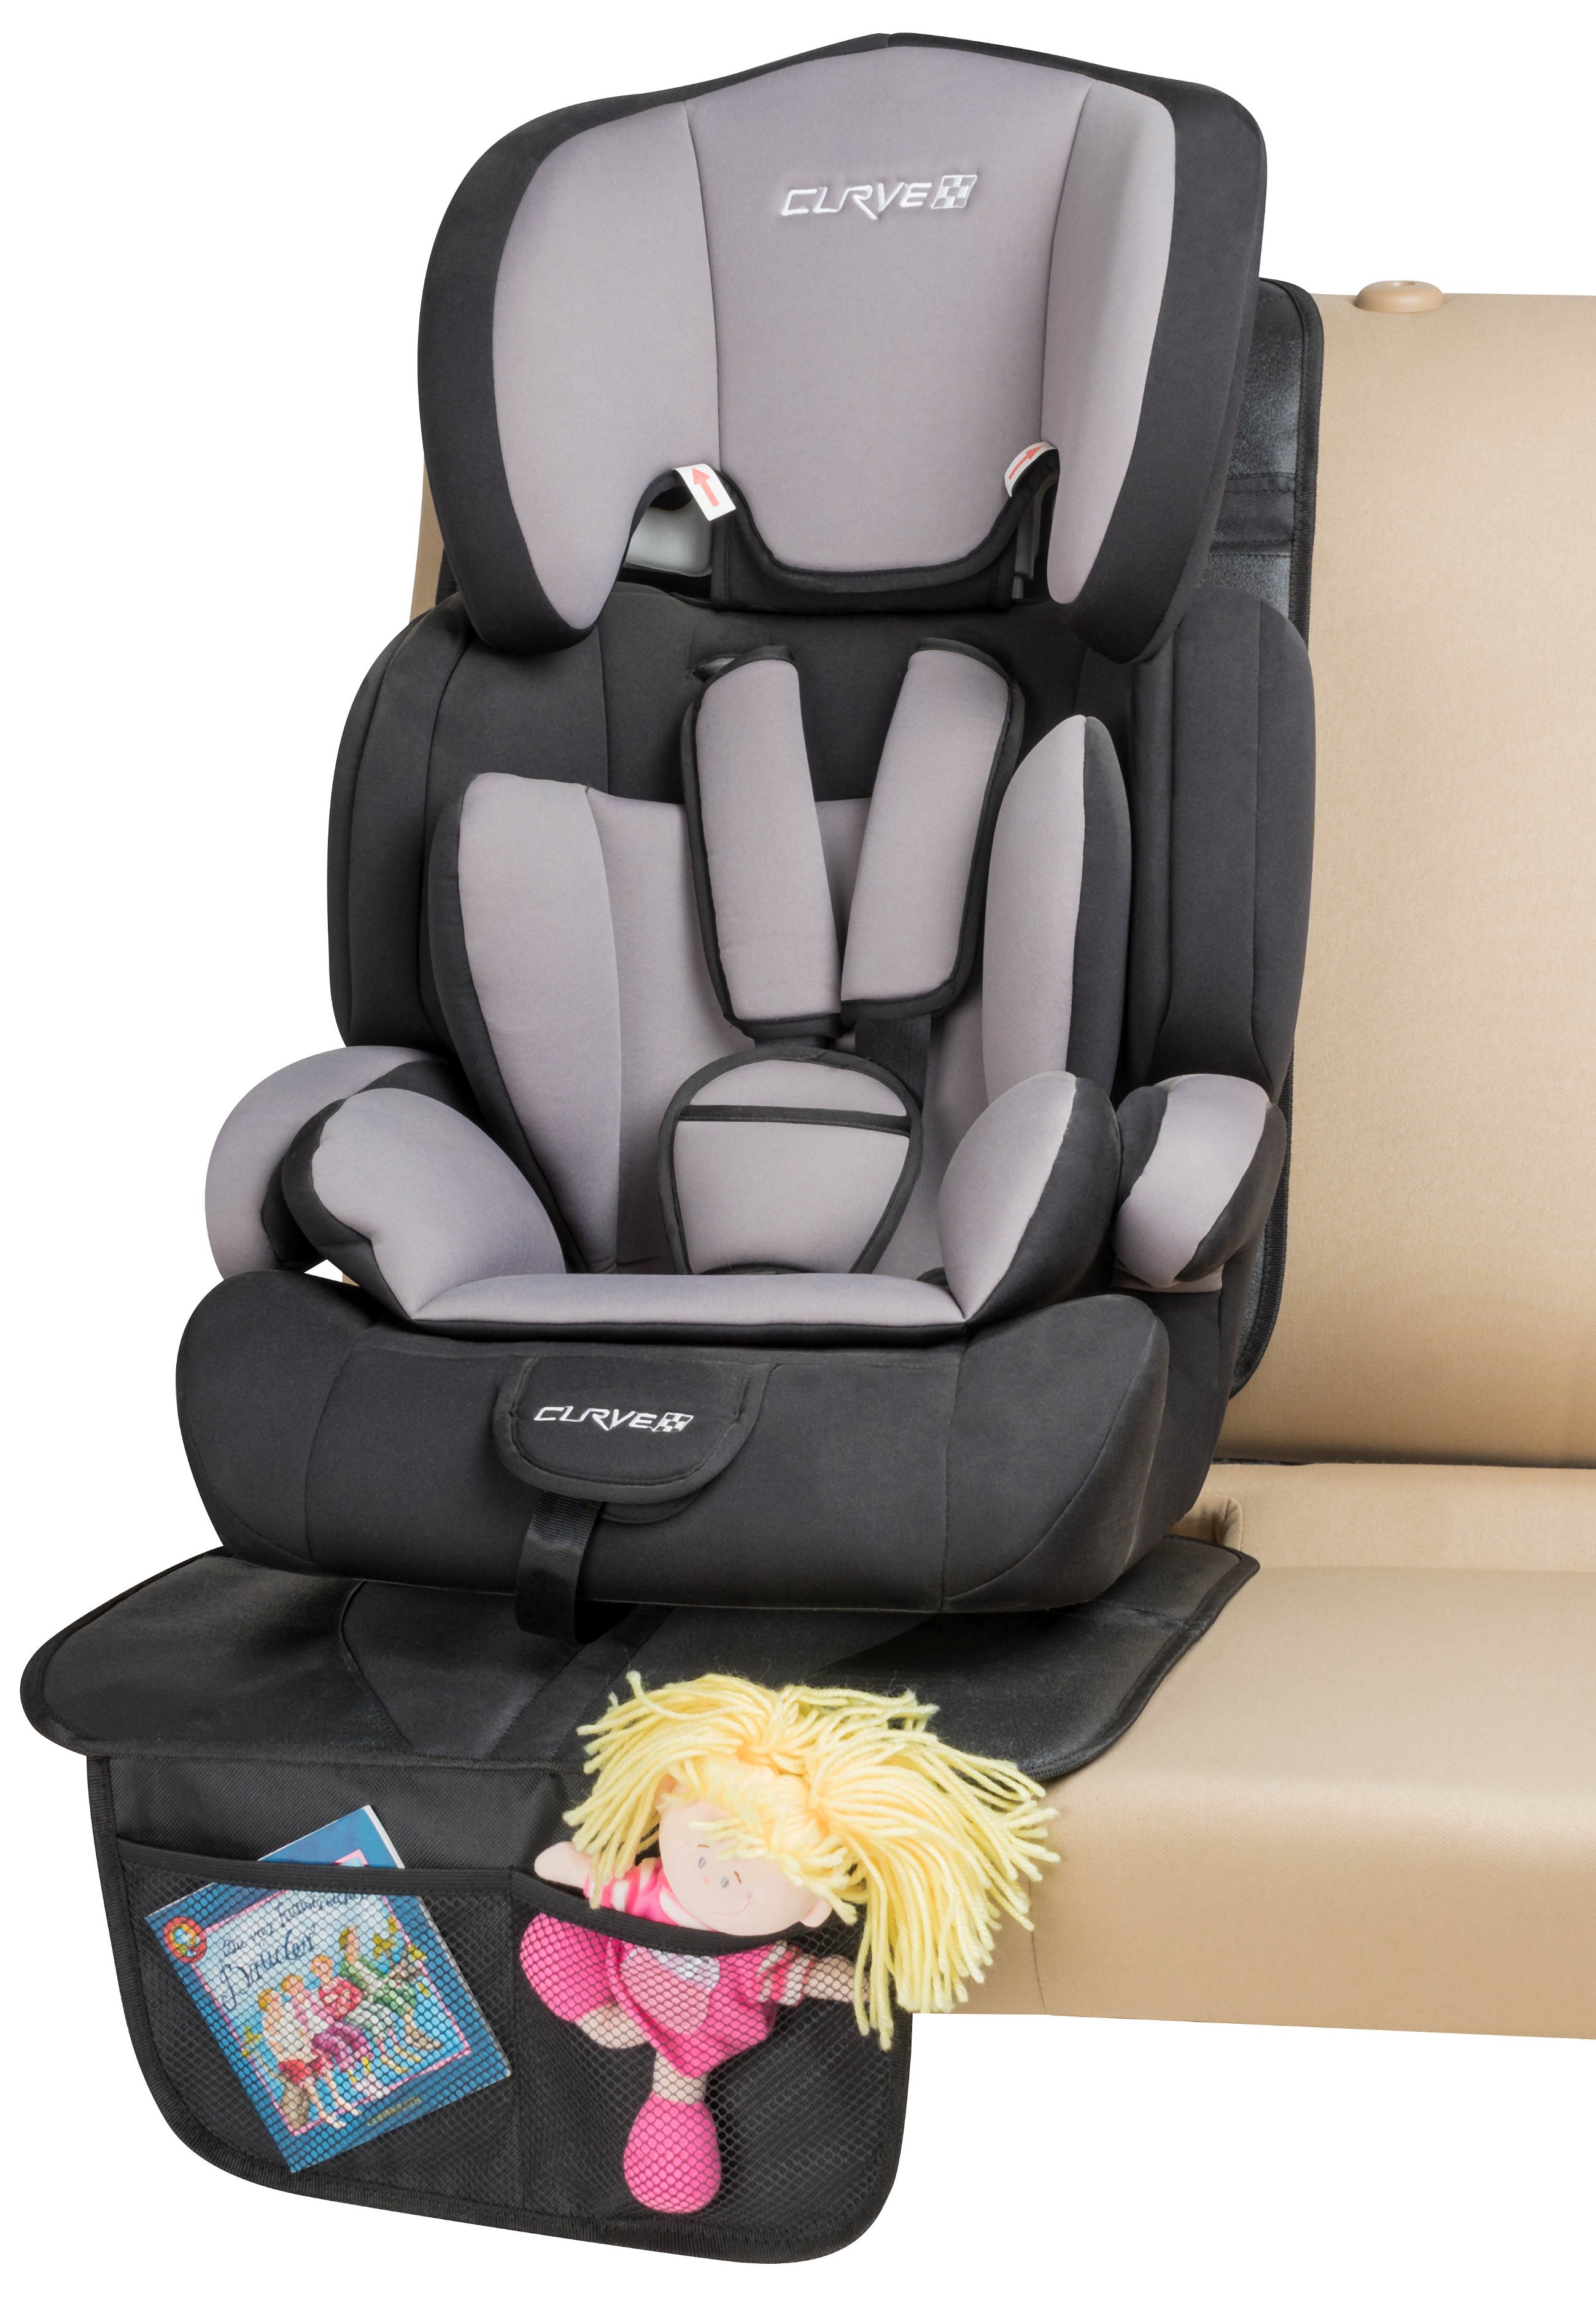 Coussin de siège enfant pour siège arrière de la voiture George XL Premium